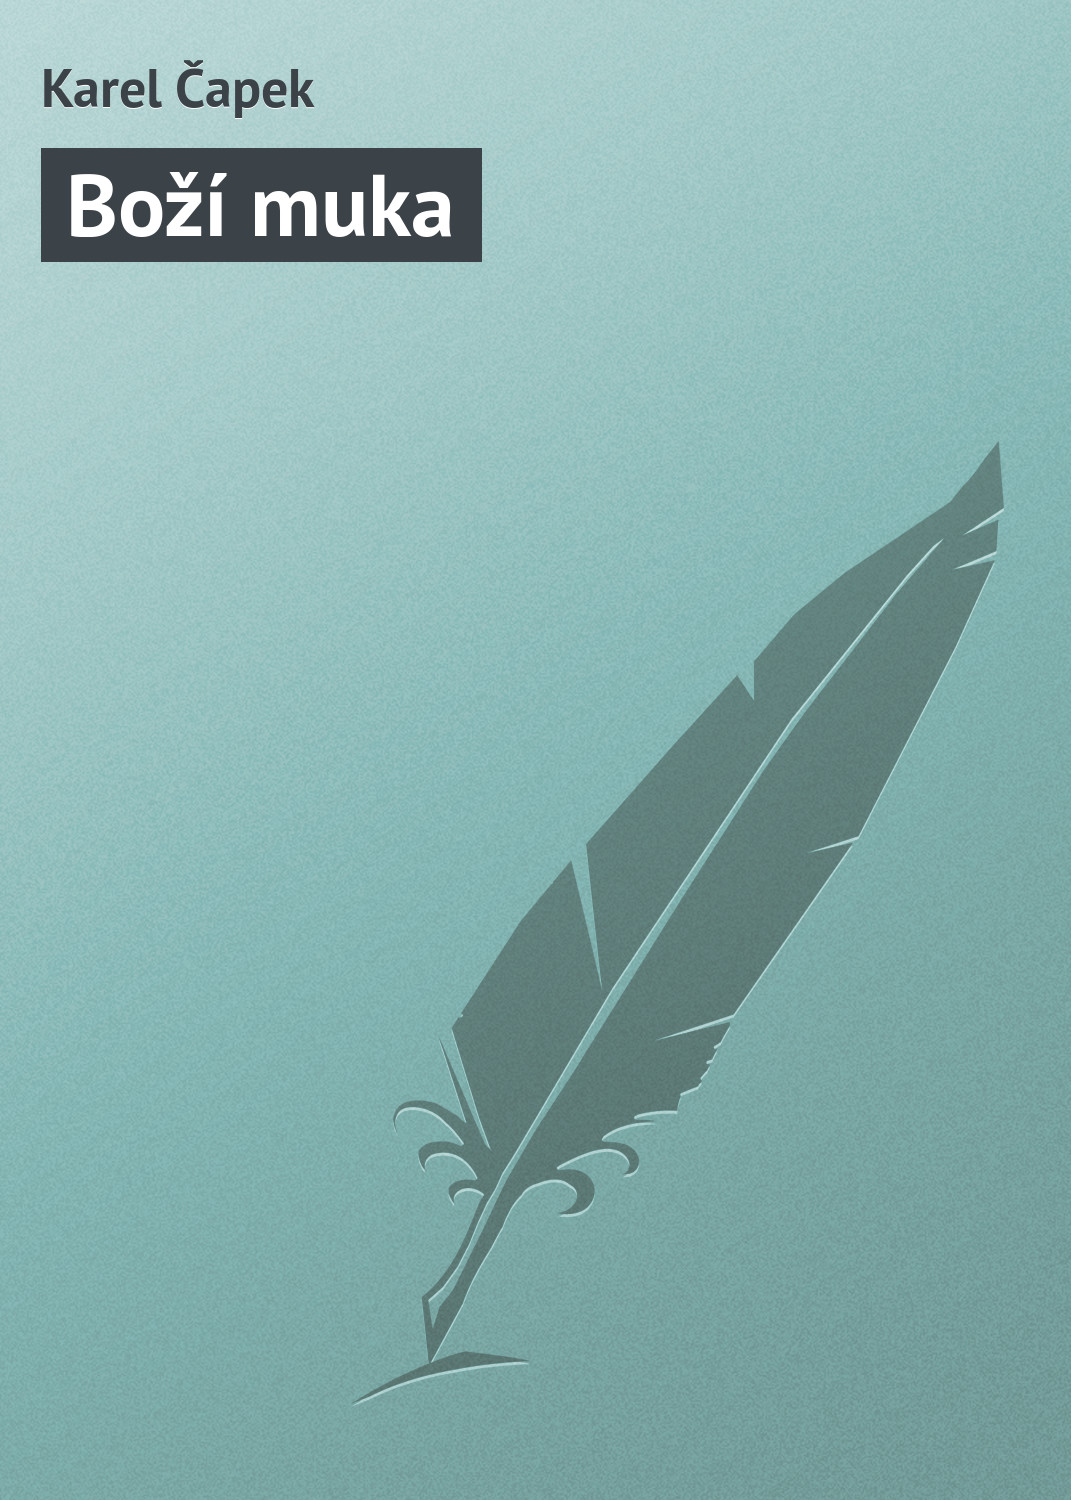 Книга Boží muka из серии , созданная Karel Čapek, может относится к жанру Зарубежная классика, Зарубежная старинная литература. Стоимость электронной книги Boží muka с идентификатором 20833766 составляет 5.99 руб.